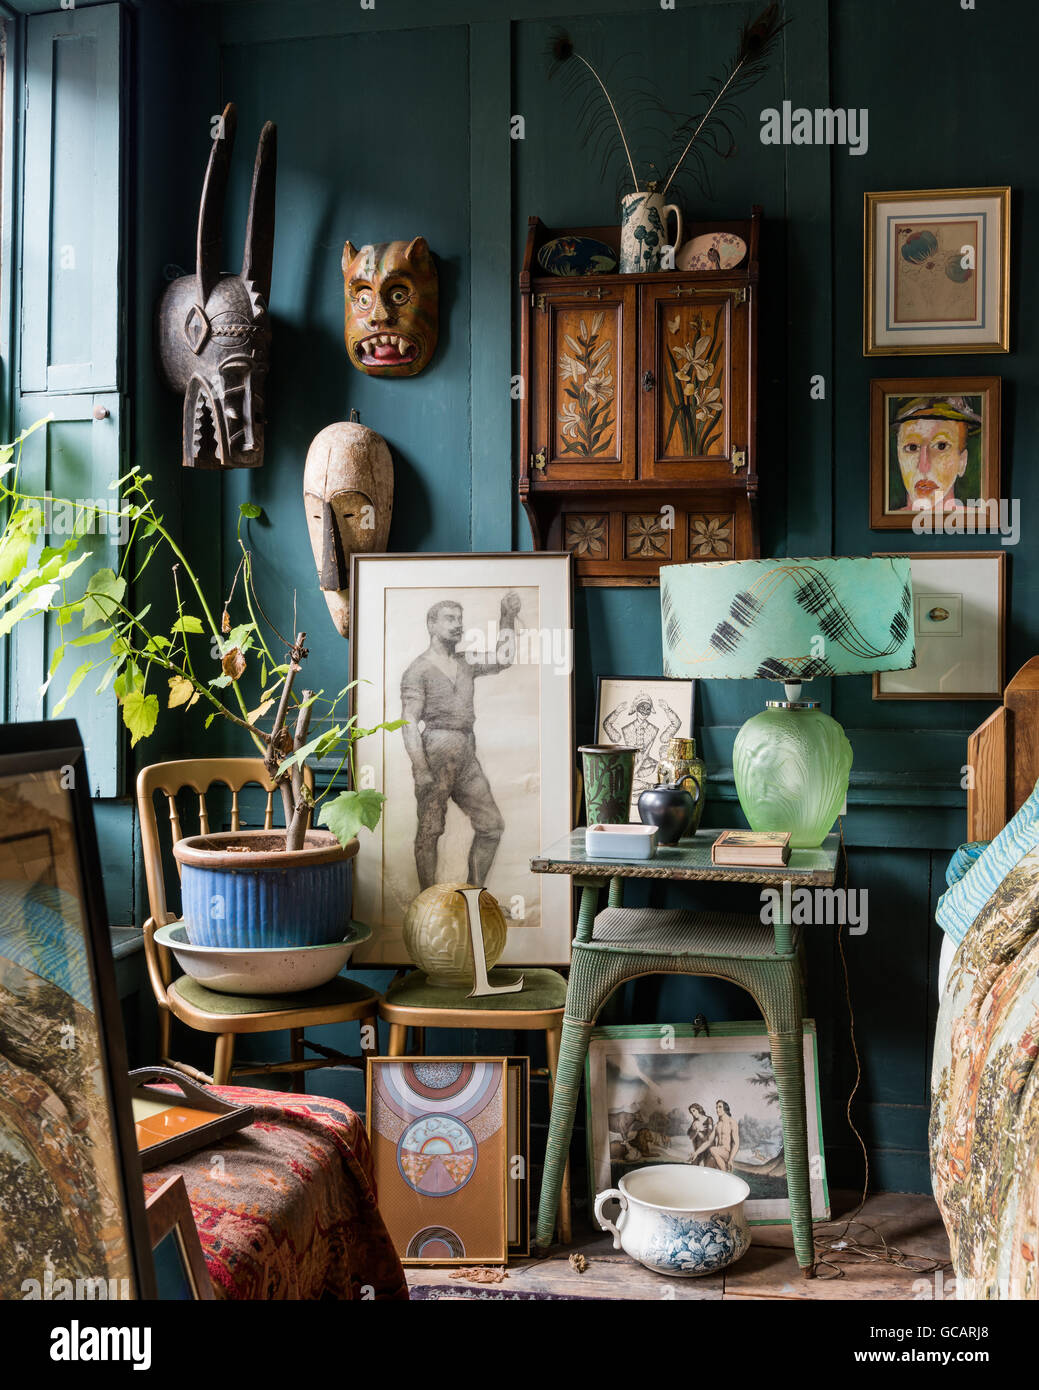 De couleur turquoise original chambre lambrissée rempli de divers objets - masques africains, un assortiment d'art et de poterie anglais Banque D'Images